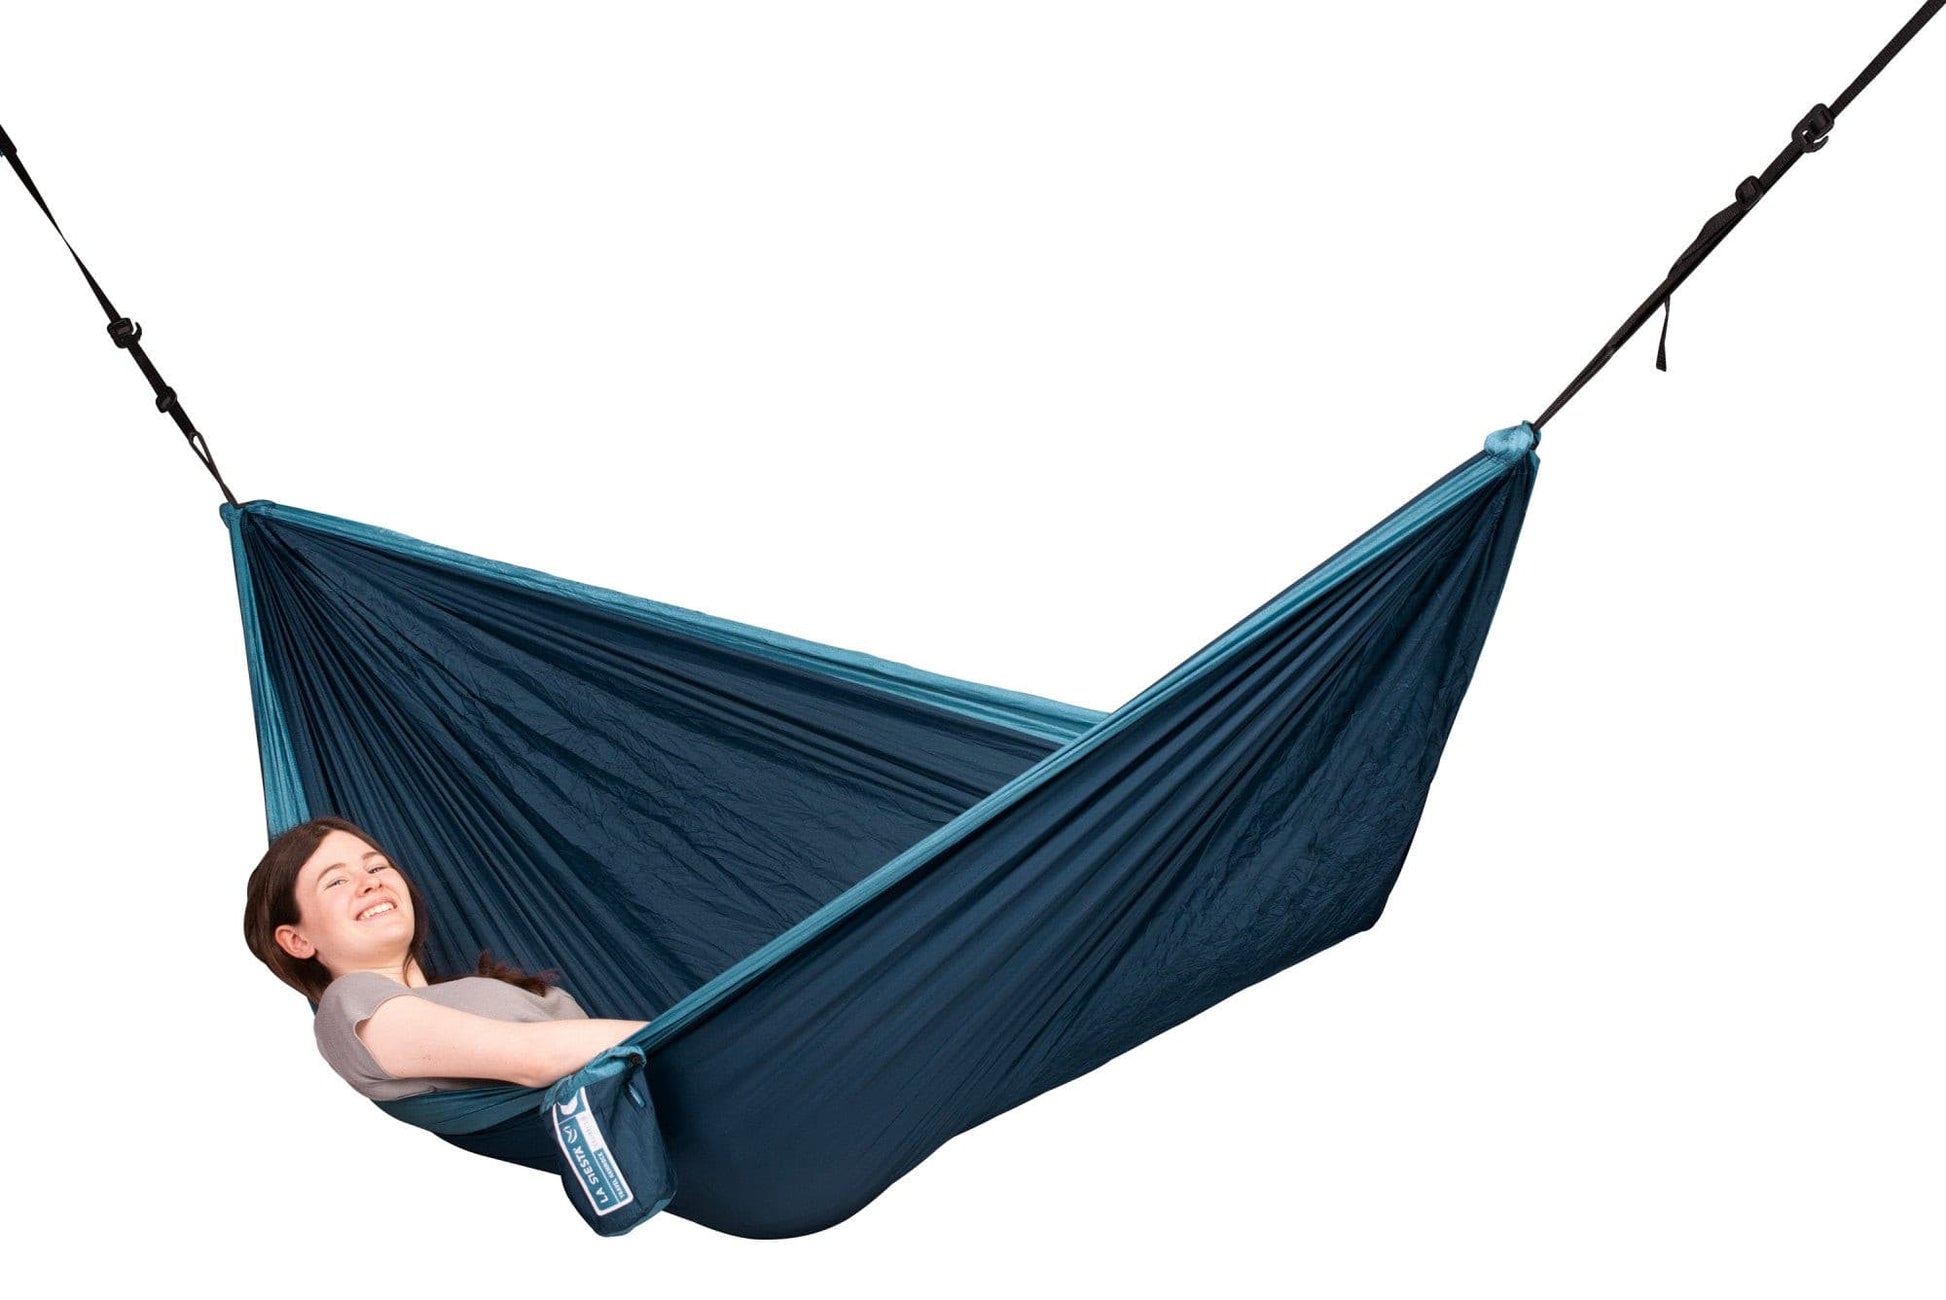 Trekking hammock hamaca con carpa para camping, travesía o